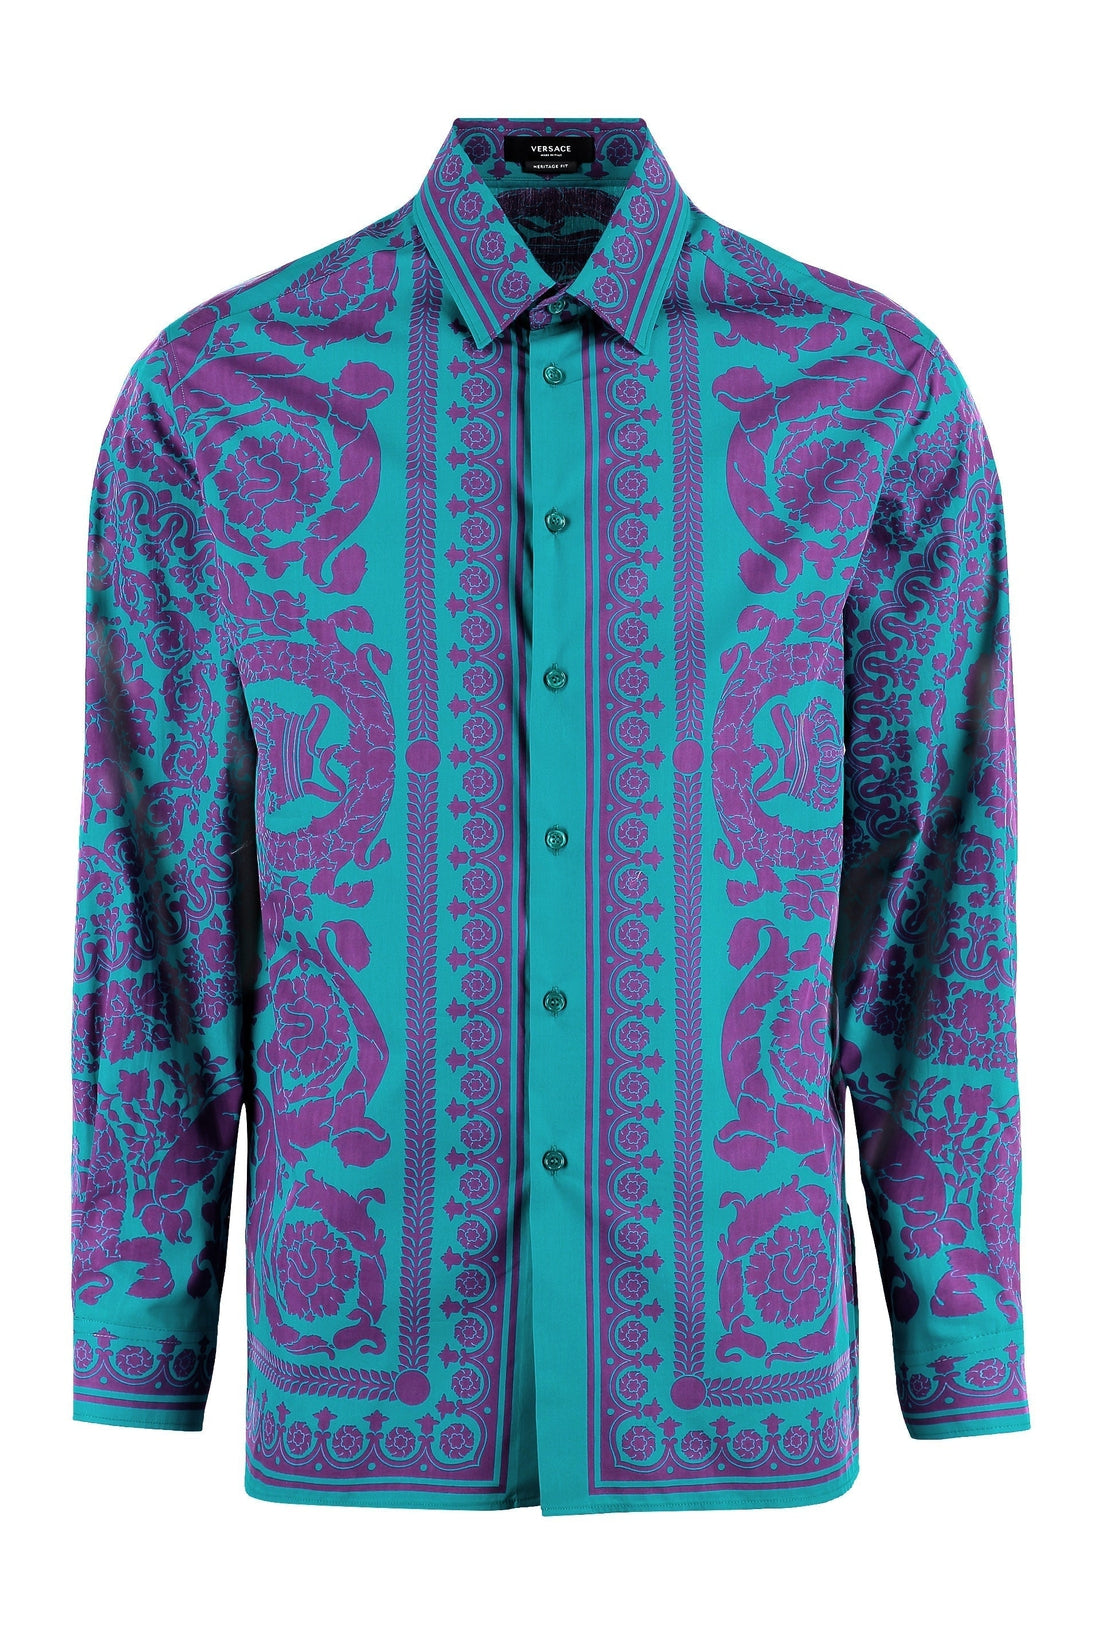 Versace-OUTLET-SALE-Printed cotton shirt-ARCHIVIST